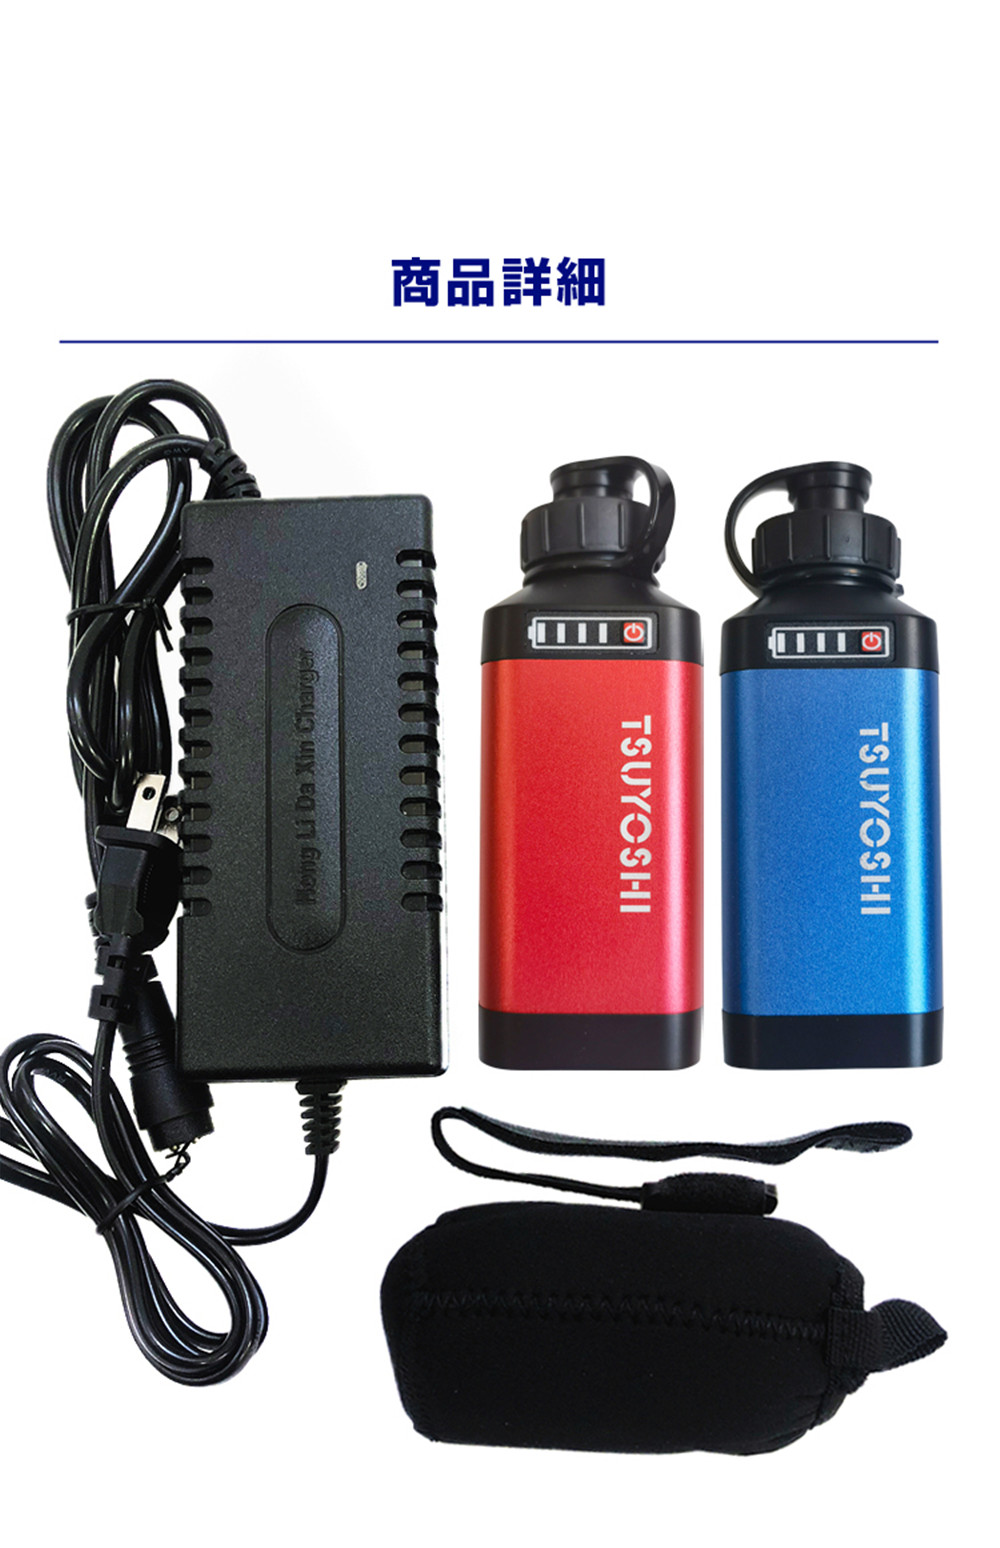 正規逆輸入品 ダイワ シマノ用 2点セット 電動リール用 SCL-3500 スーパーリチウム 互換 バッテリー 充電器 セット 14.8V 赤